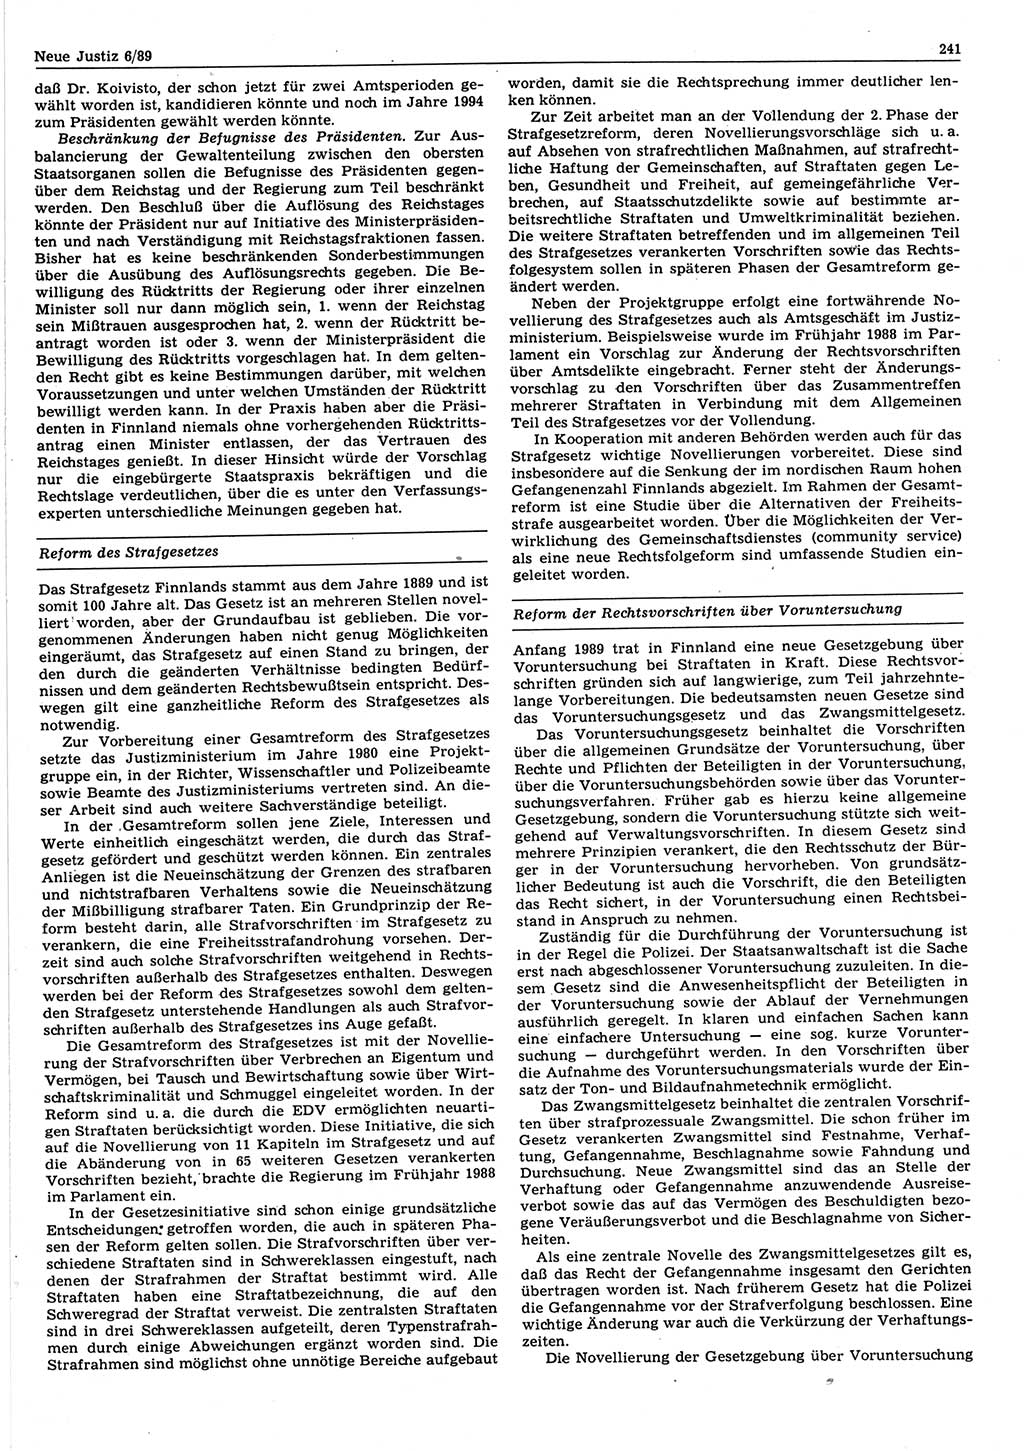 Neue Justiz (NJ), Zeitschrift für sozialistisches Recht und Gesetzlichkeit [Deutsche Demokratische Republik (DDR)], 43. Jahrgang 1989, Seite 241 (NJ DDR 1989, S. 241)